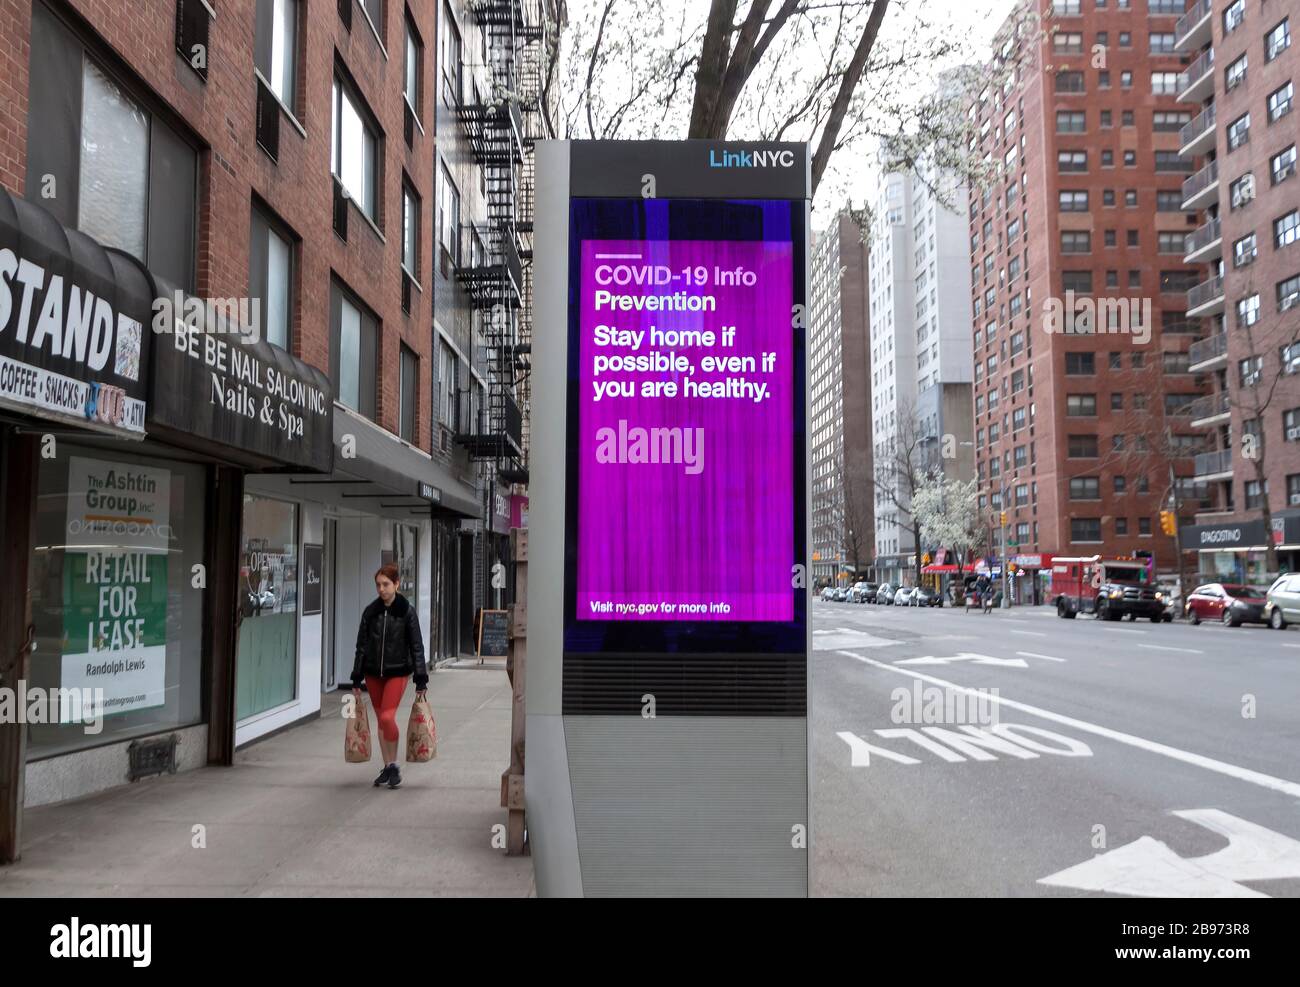 LinkNYC digital Kiosk firma sul marciapiede che mostra messaggi di Covid-19 (coronavirus) e consigli sulla quarantena per i newyorkesi. Foto Stock